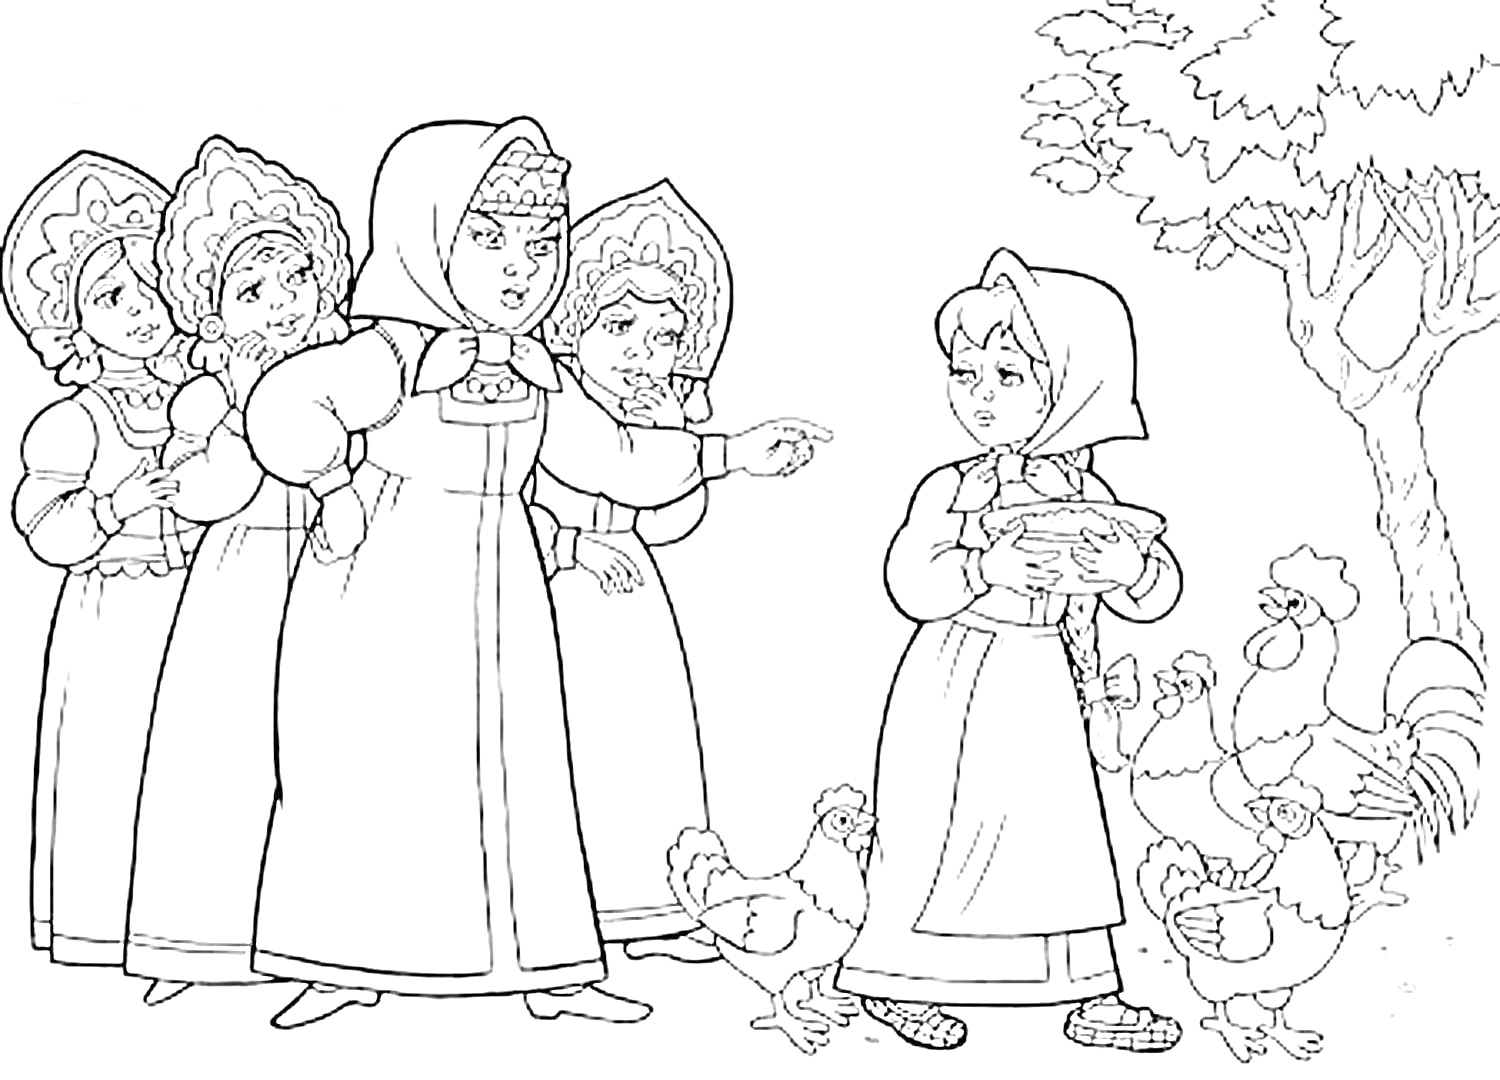 Раскраска Крошечка-Хаврошечка: барышни указывают на девушку с подносом, деревья и куры на переднем плане